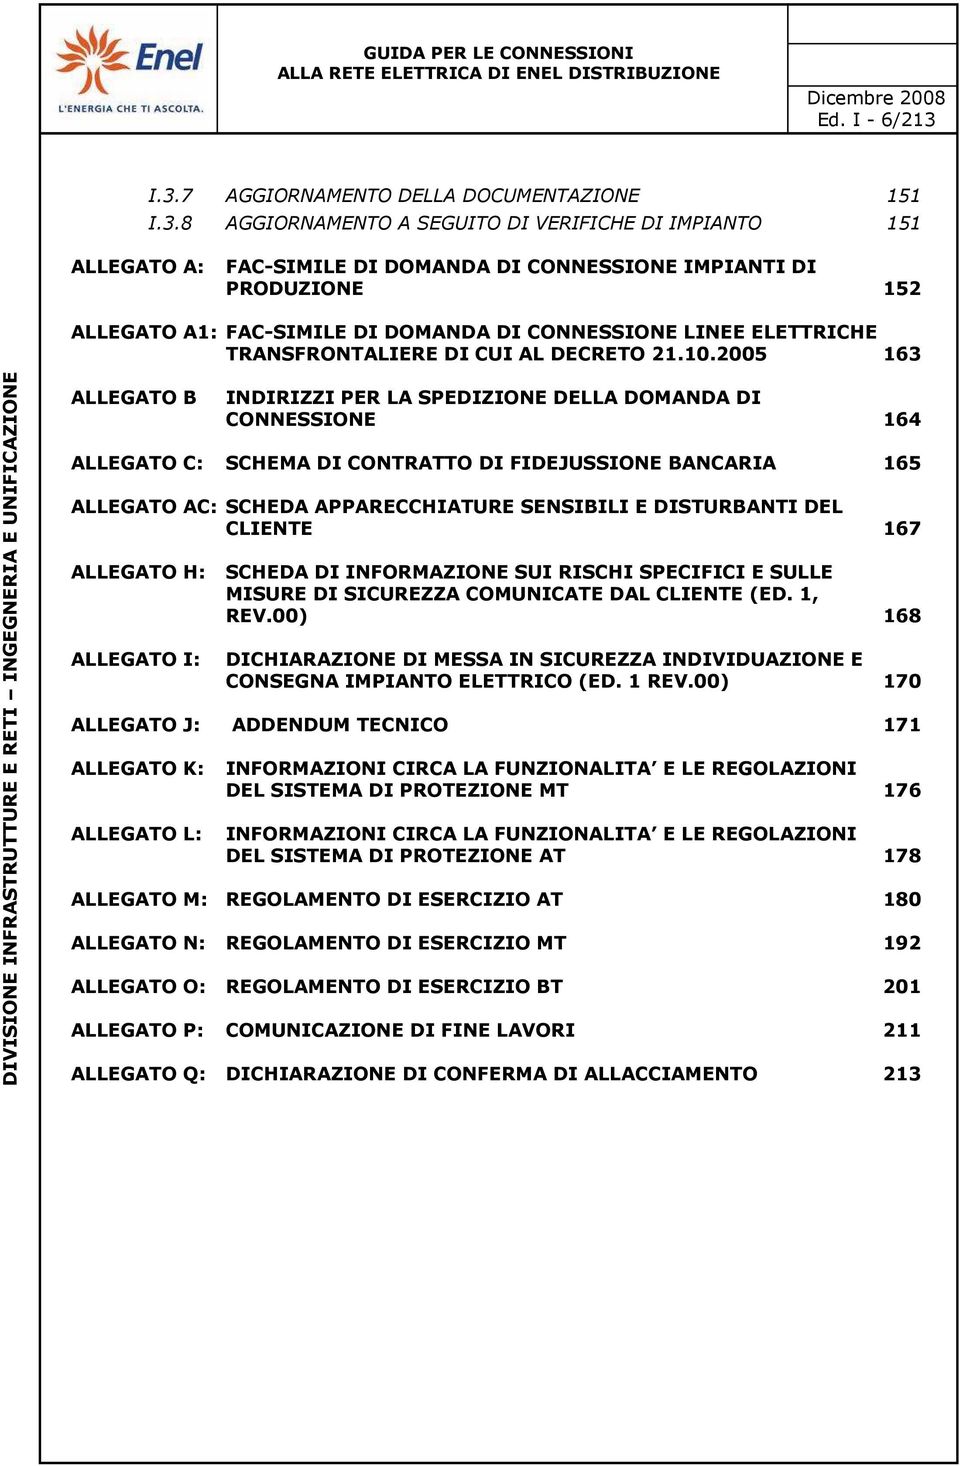 FAC-SIMILE DI DOMANDA DI CONNESSIONE LINEE ELETTRICHE TRANSFRONTALIERE DI CUI AL DECRETO 21.10.